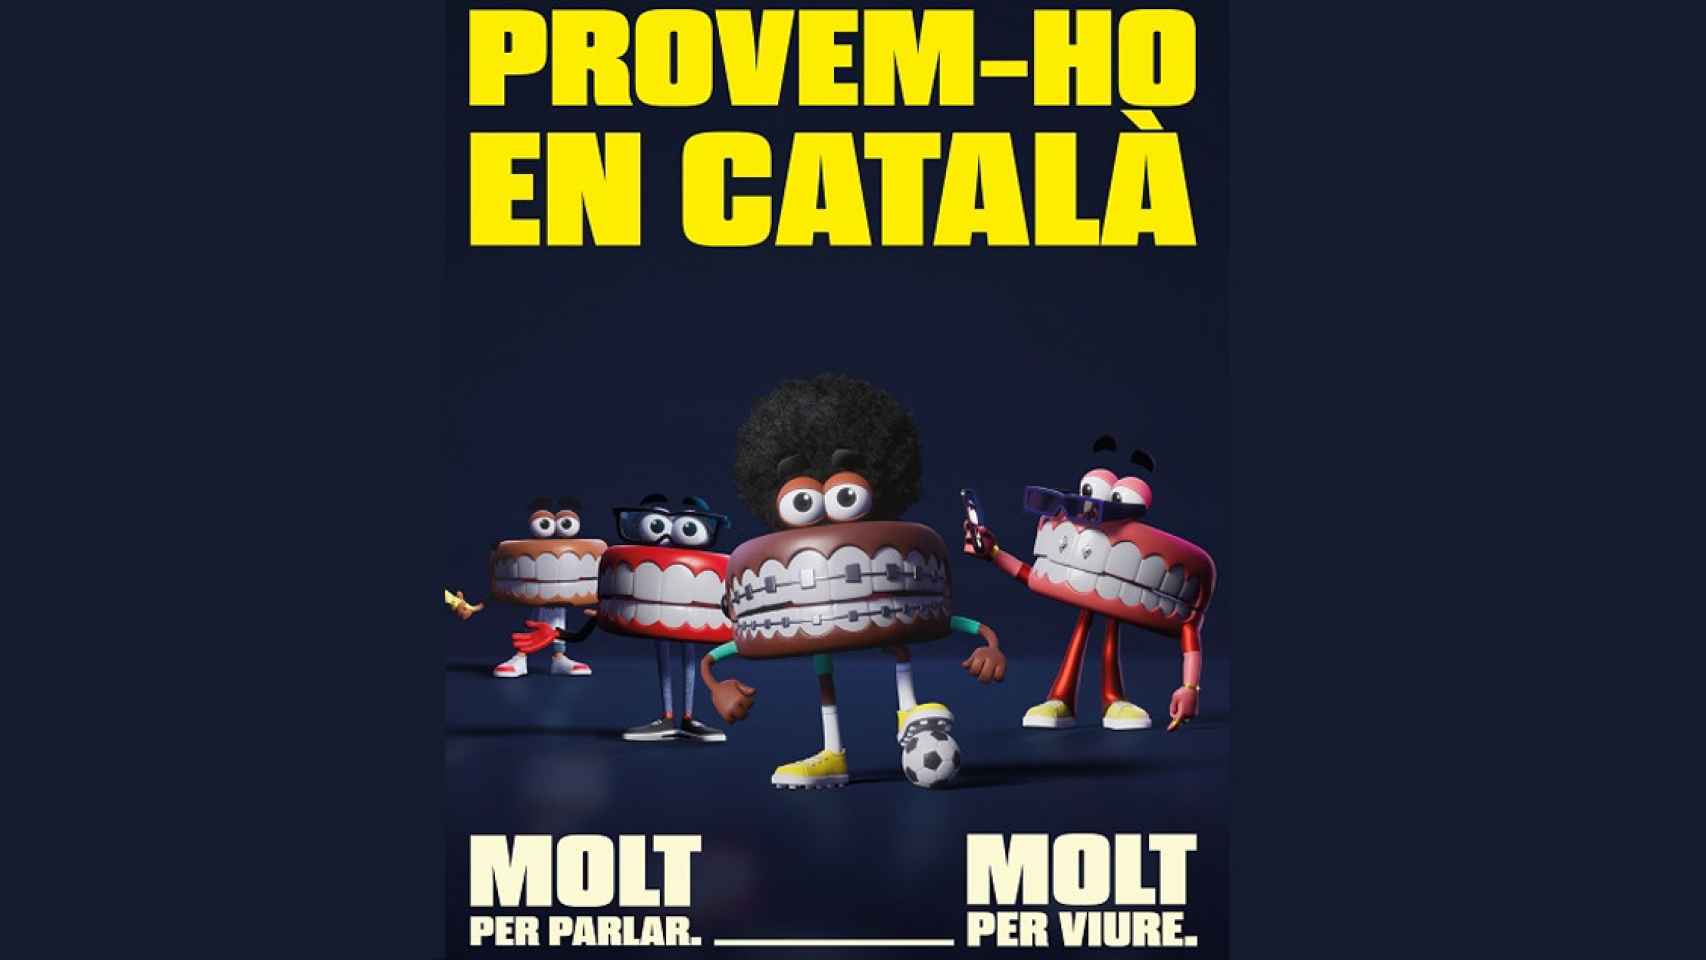 Campaña de la Generalitat de Cataluña para imponer el uso del catalán